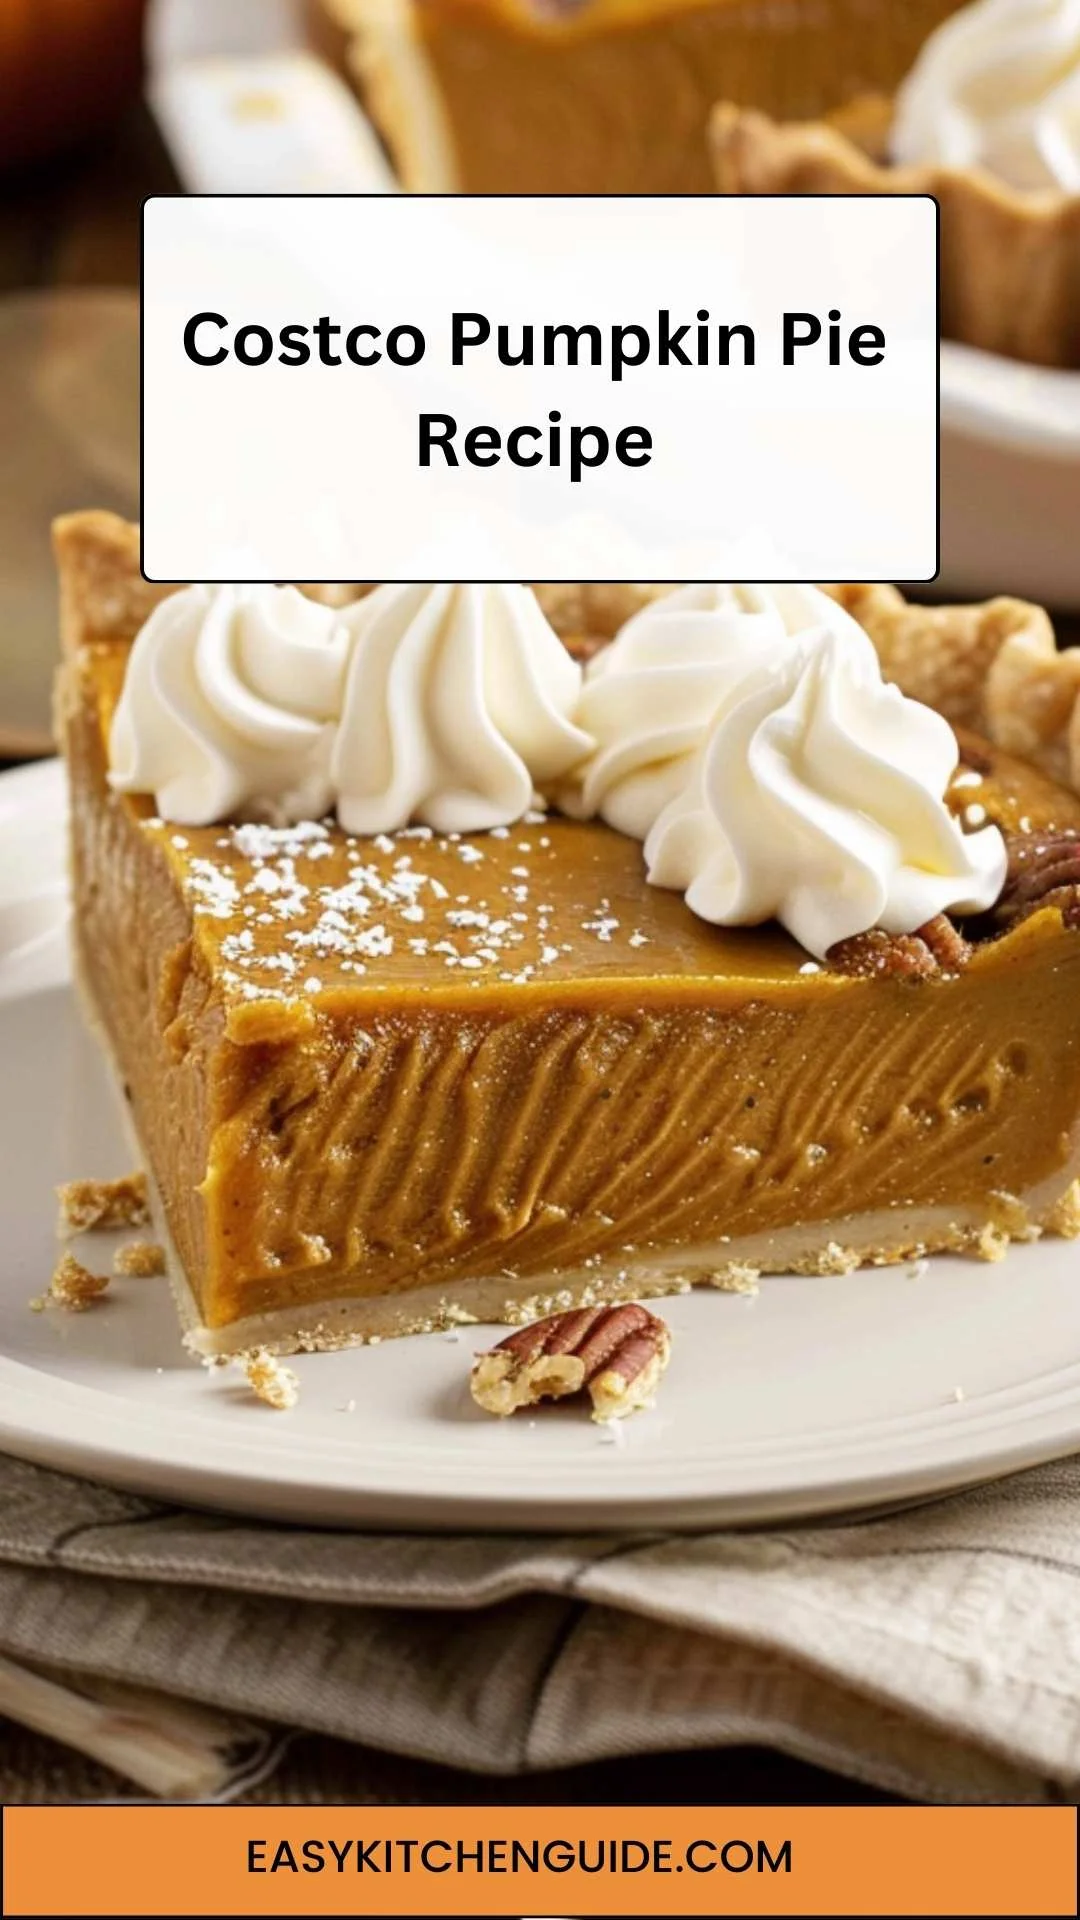 Costco Pumpkin Pie Recipe